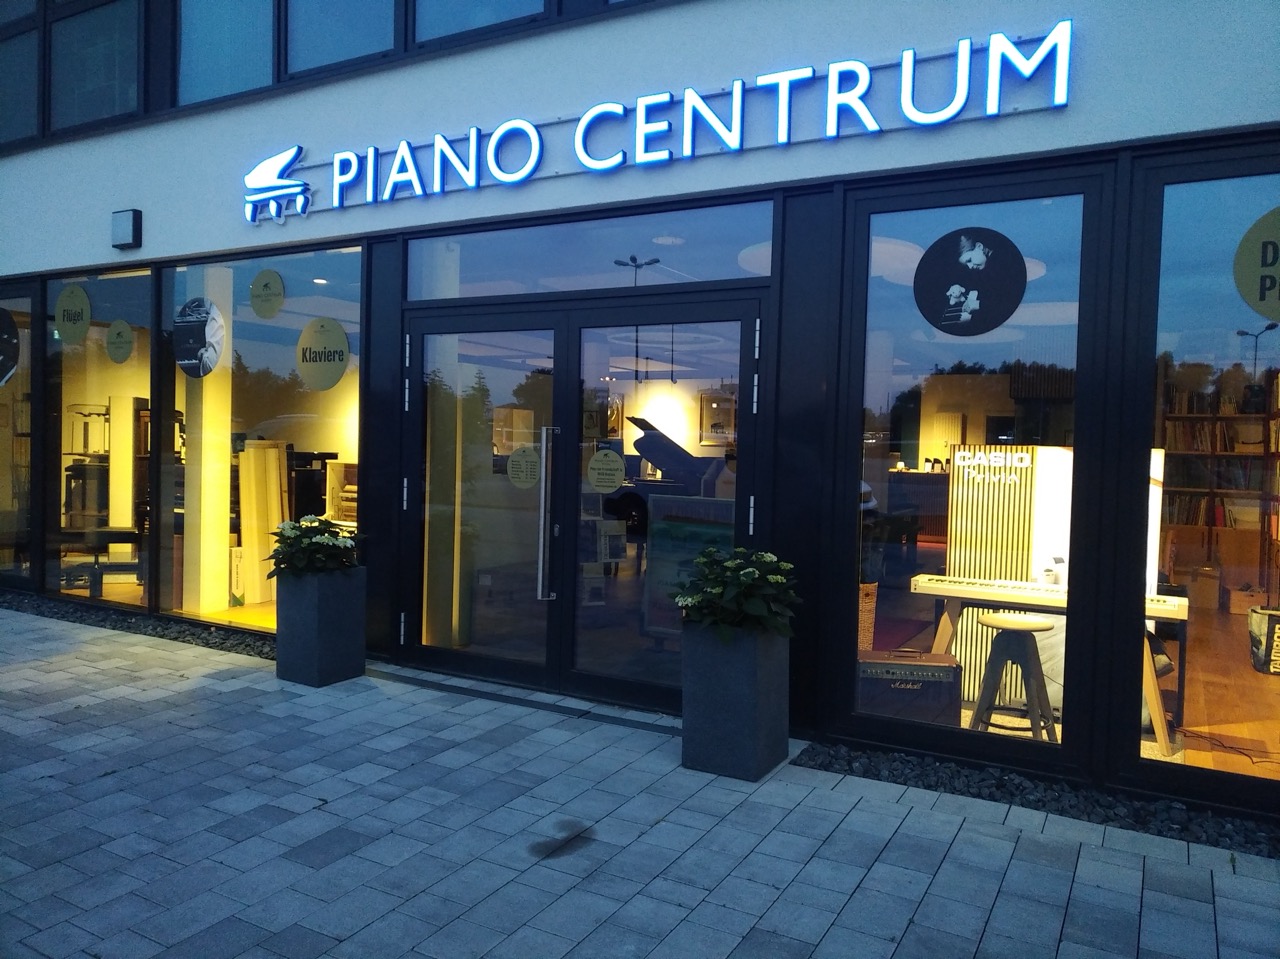 Neues Piano Centrum Rostock von außen